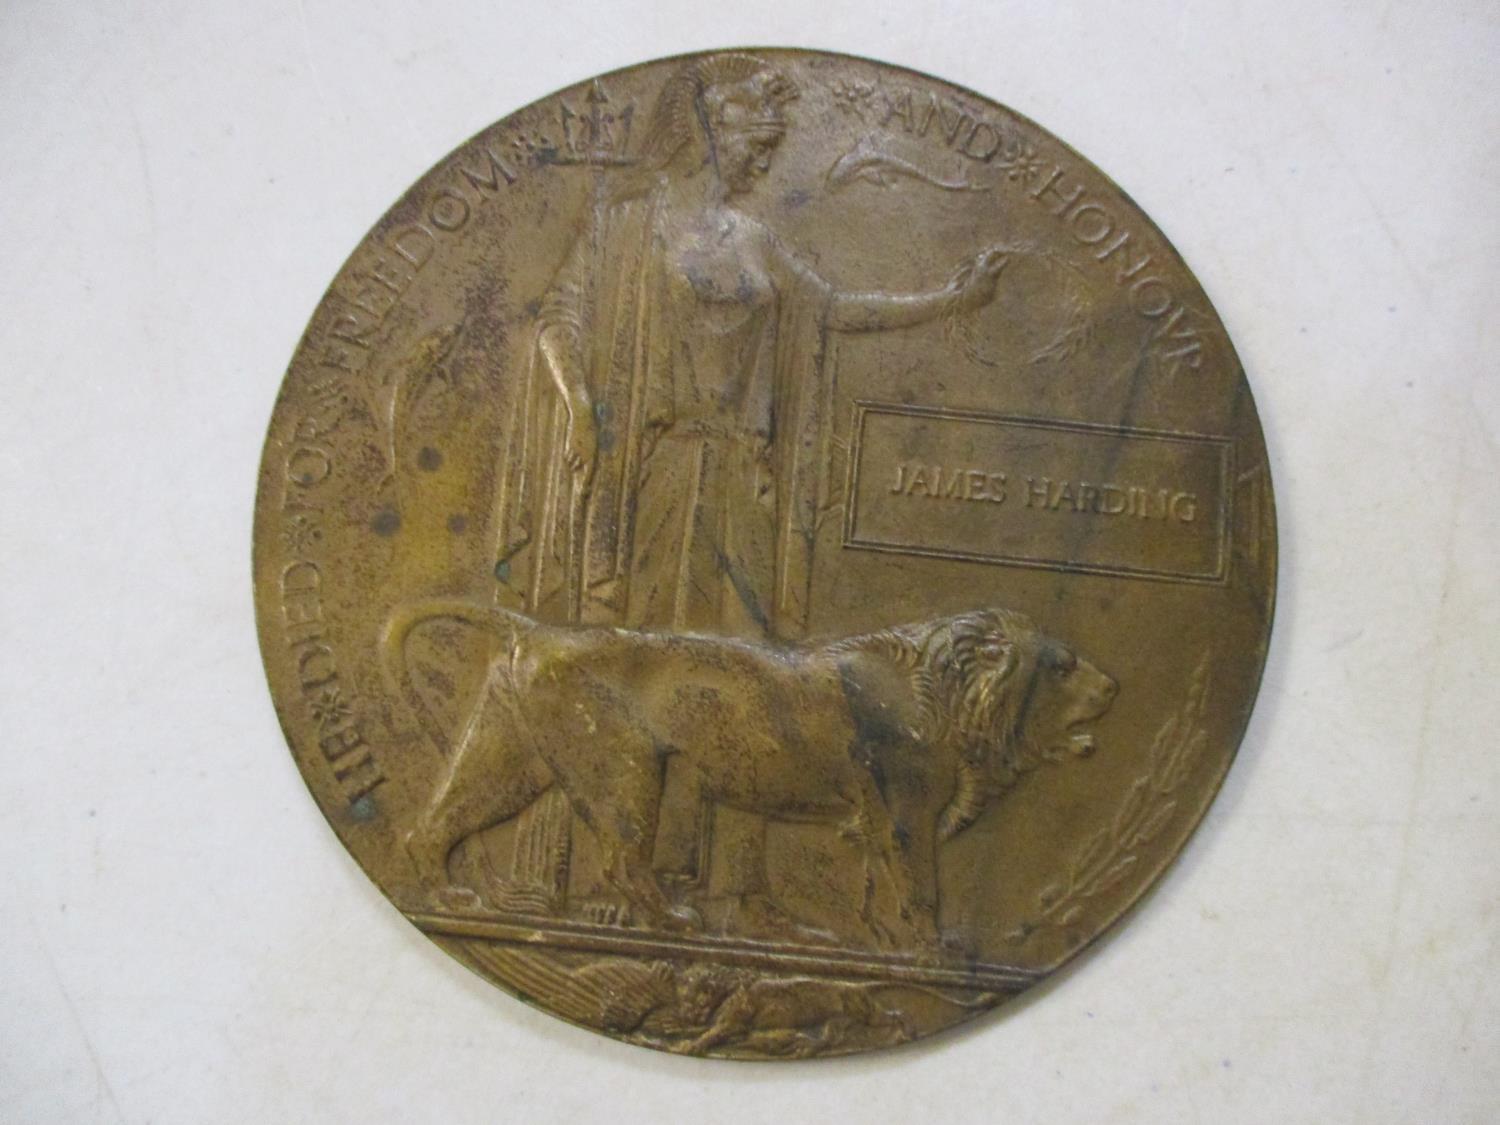 A WWI death plaque, James Harding